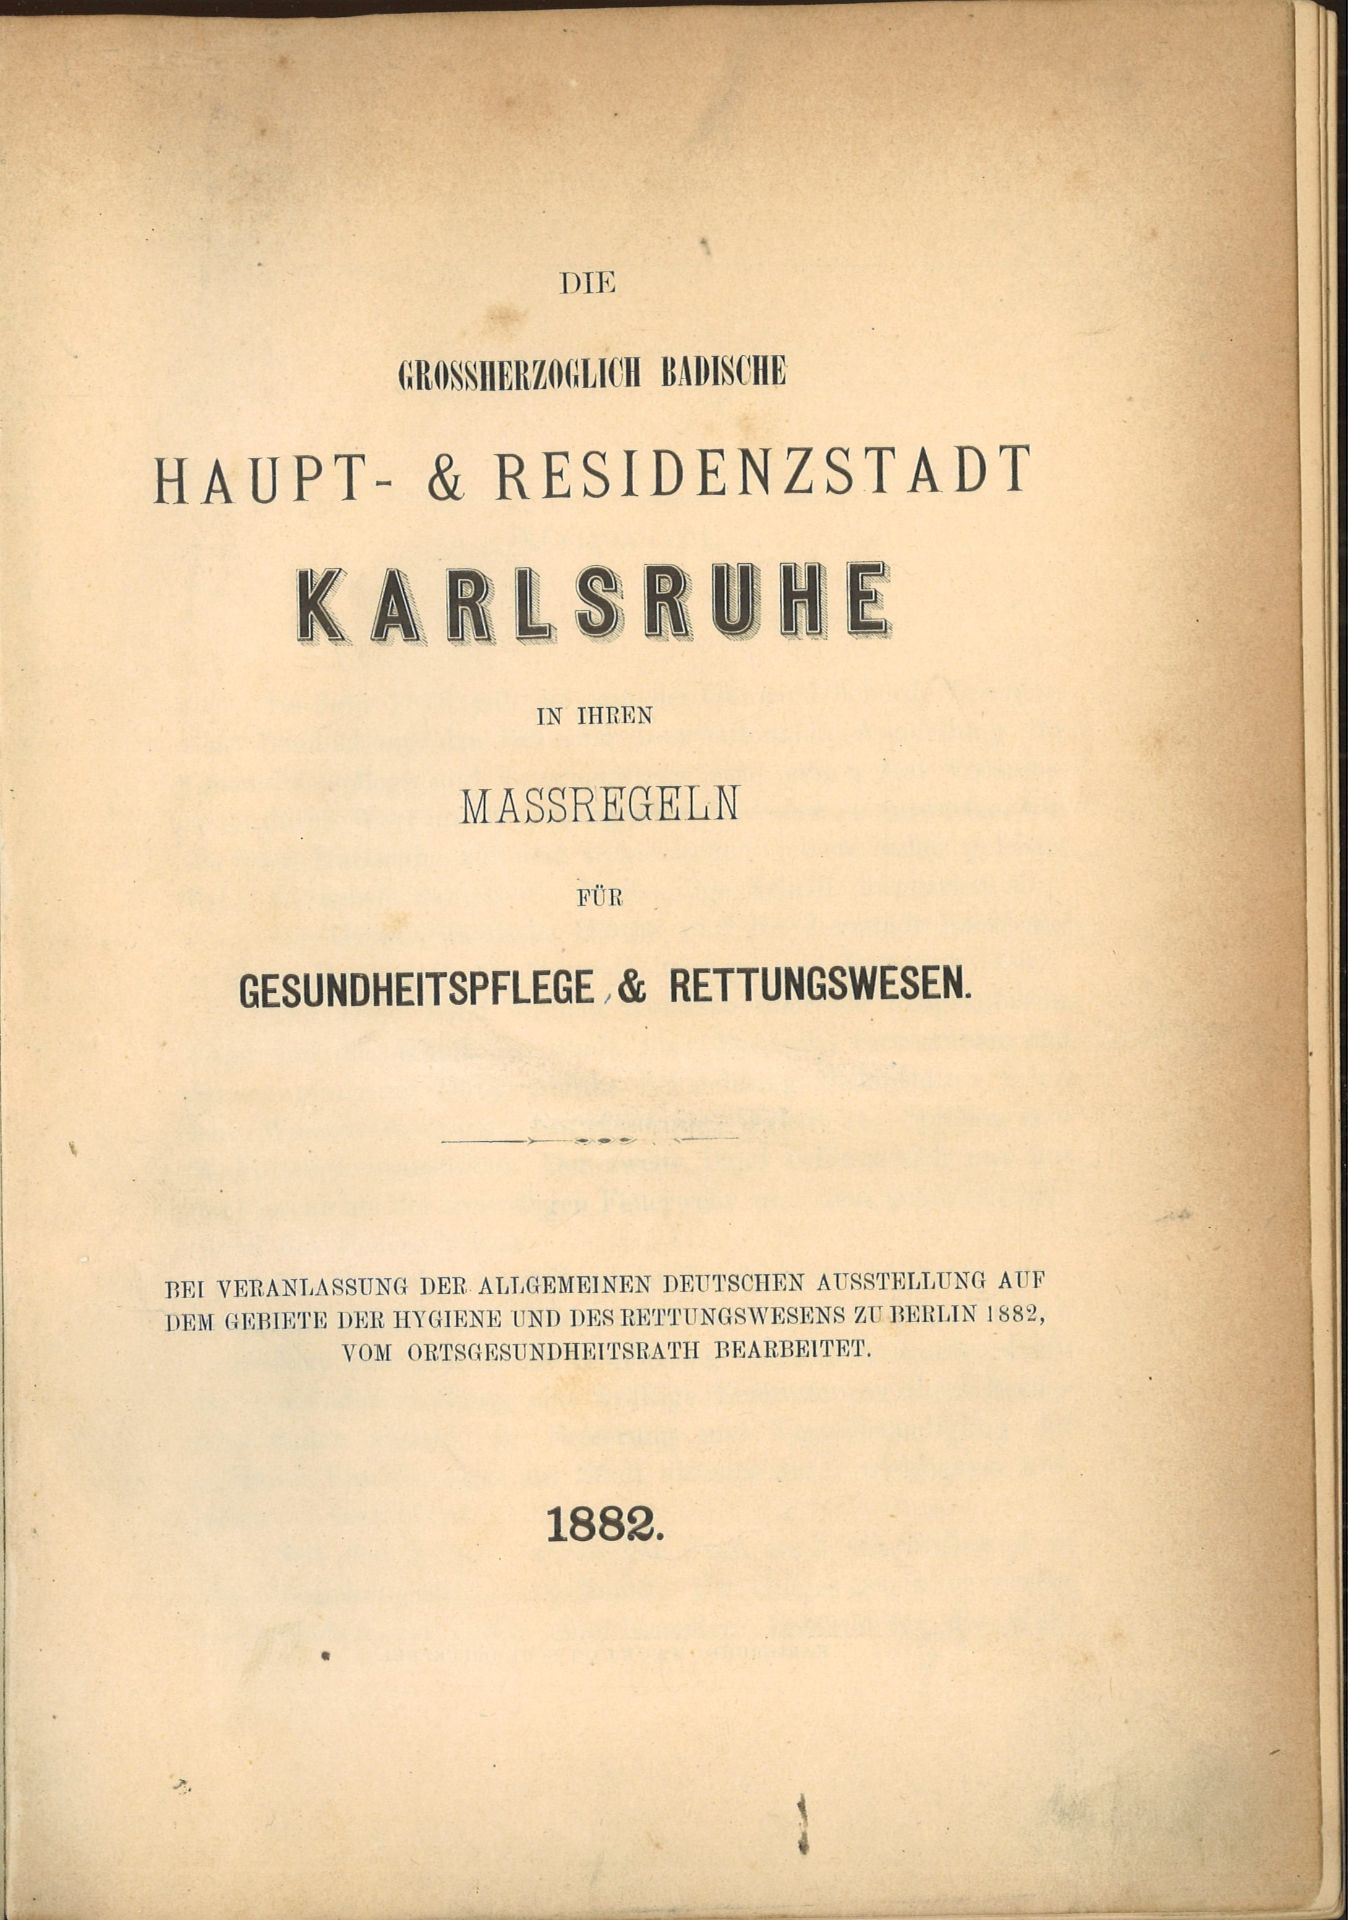 Die Grossherzogliche Badische Haupt- & Residenzstadt Karlsruhe in ihren Massregeln für